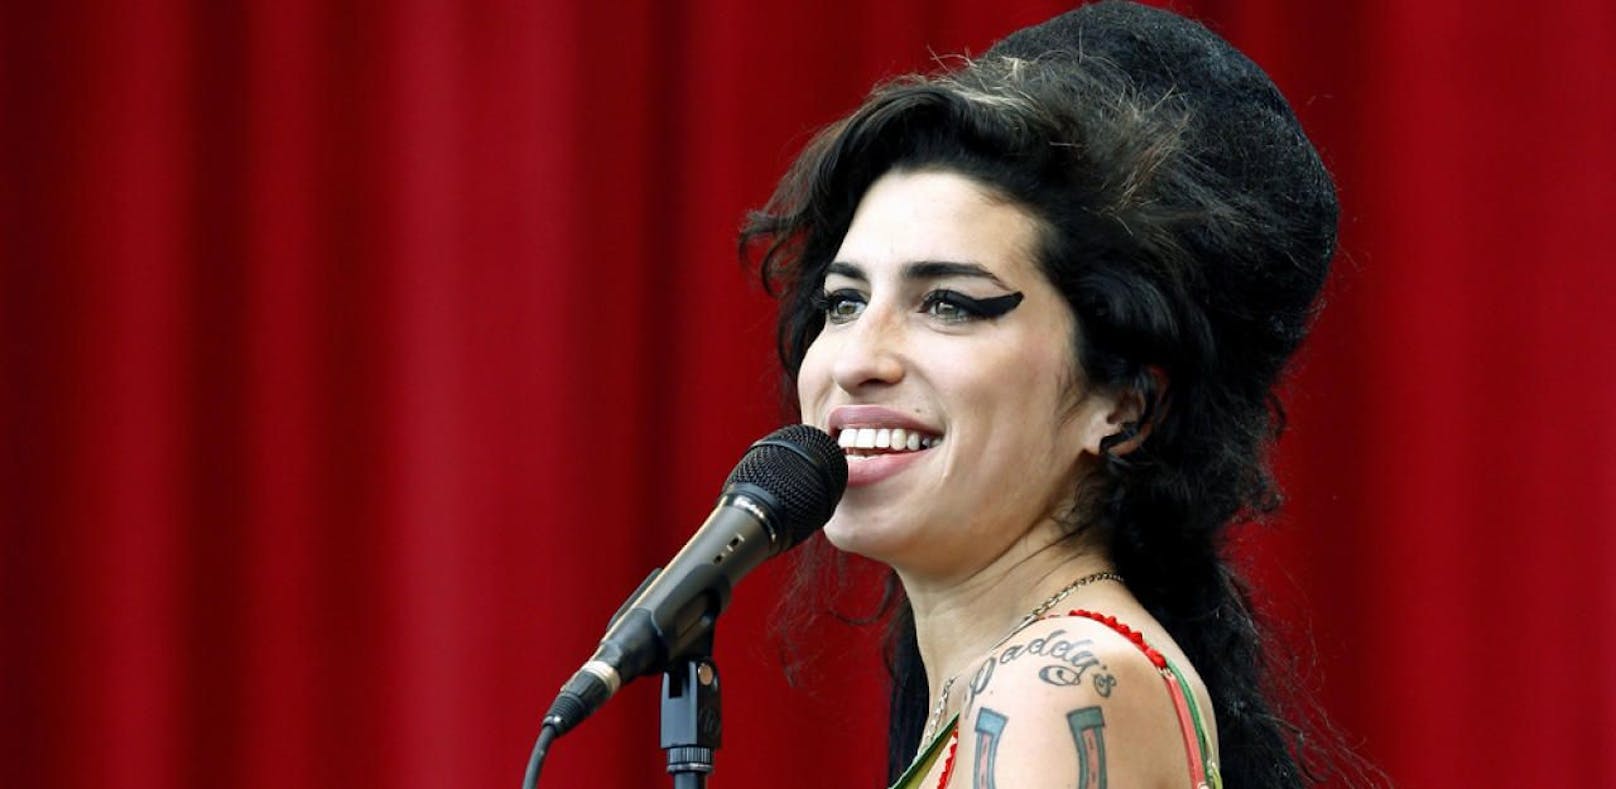 Bewerbungssong von Amy Winehouse aufgetaucht